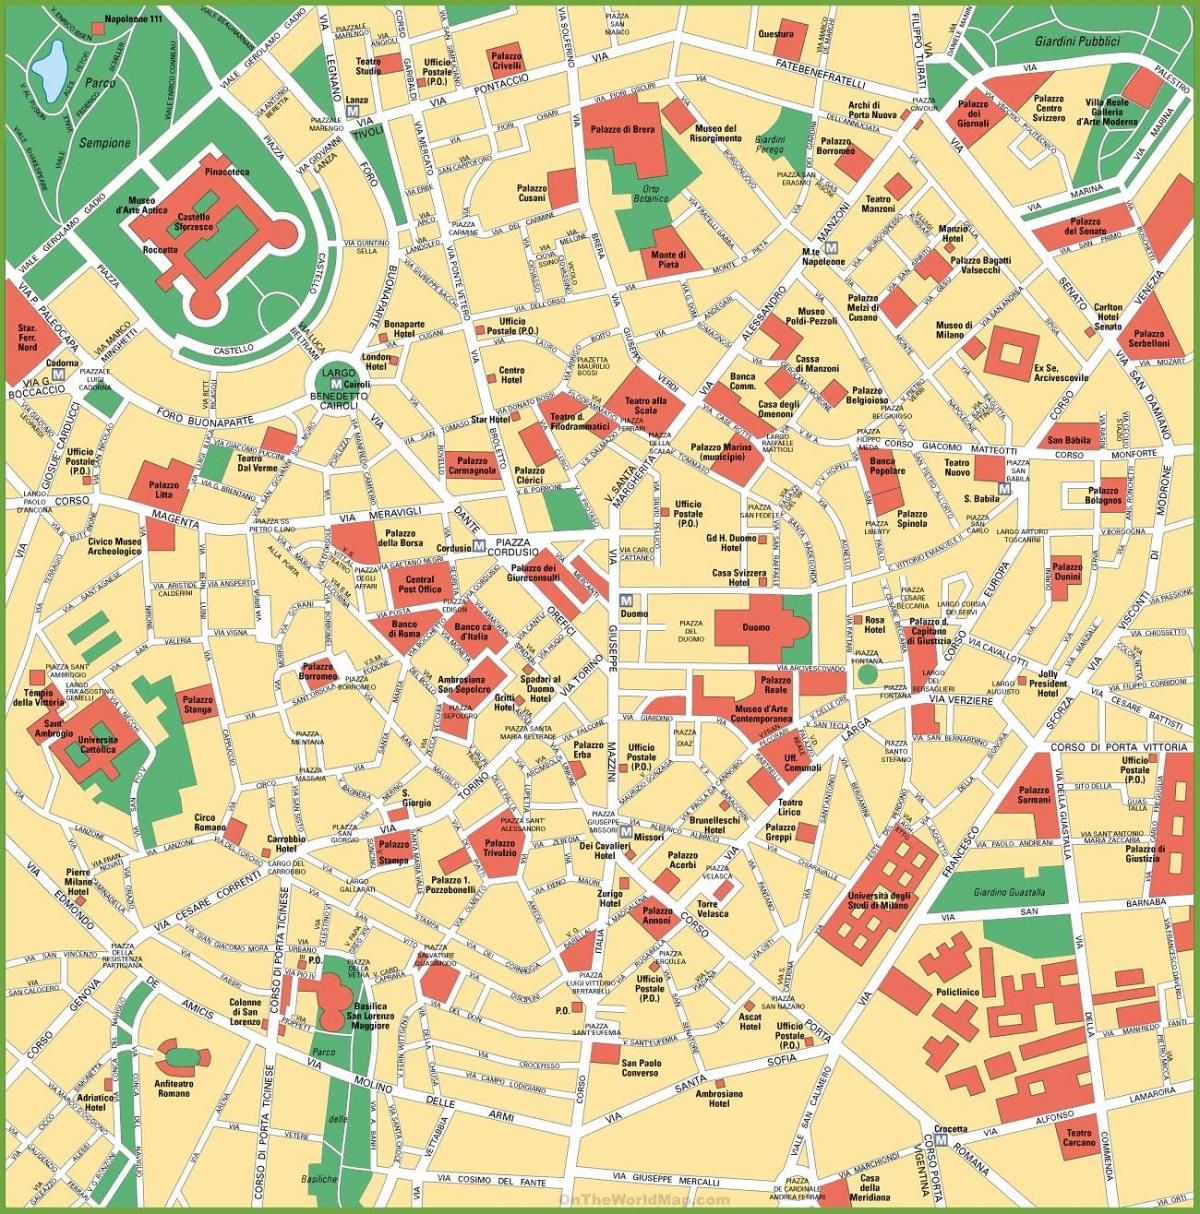 Stadtplan von Mailand, Italien